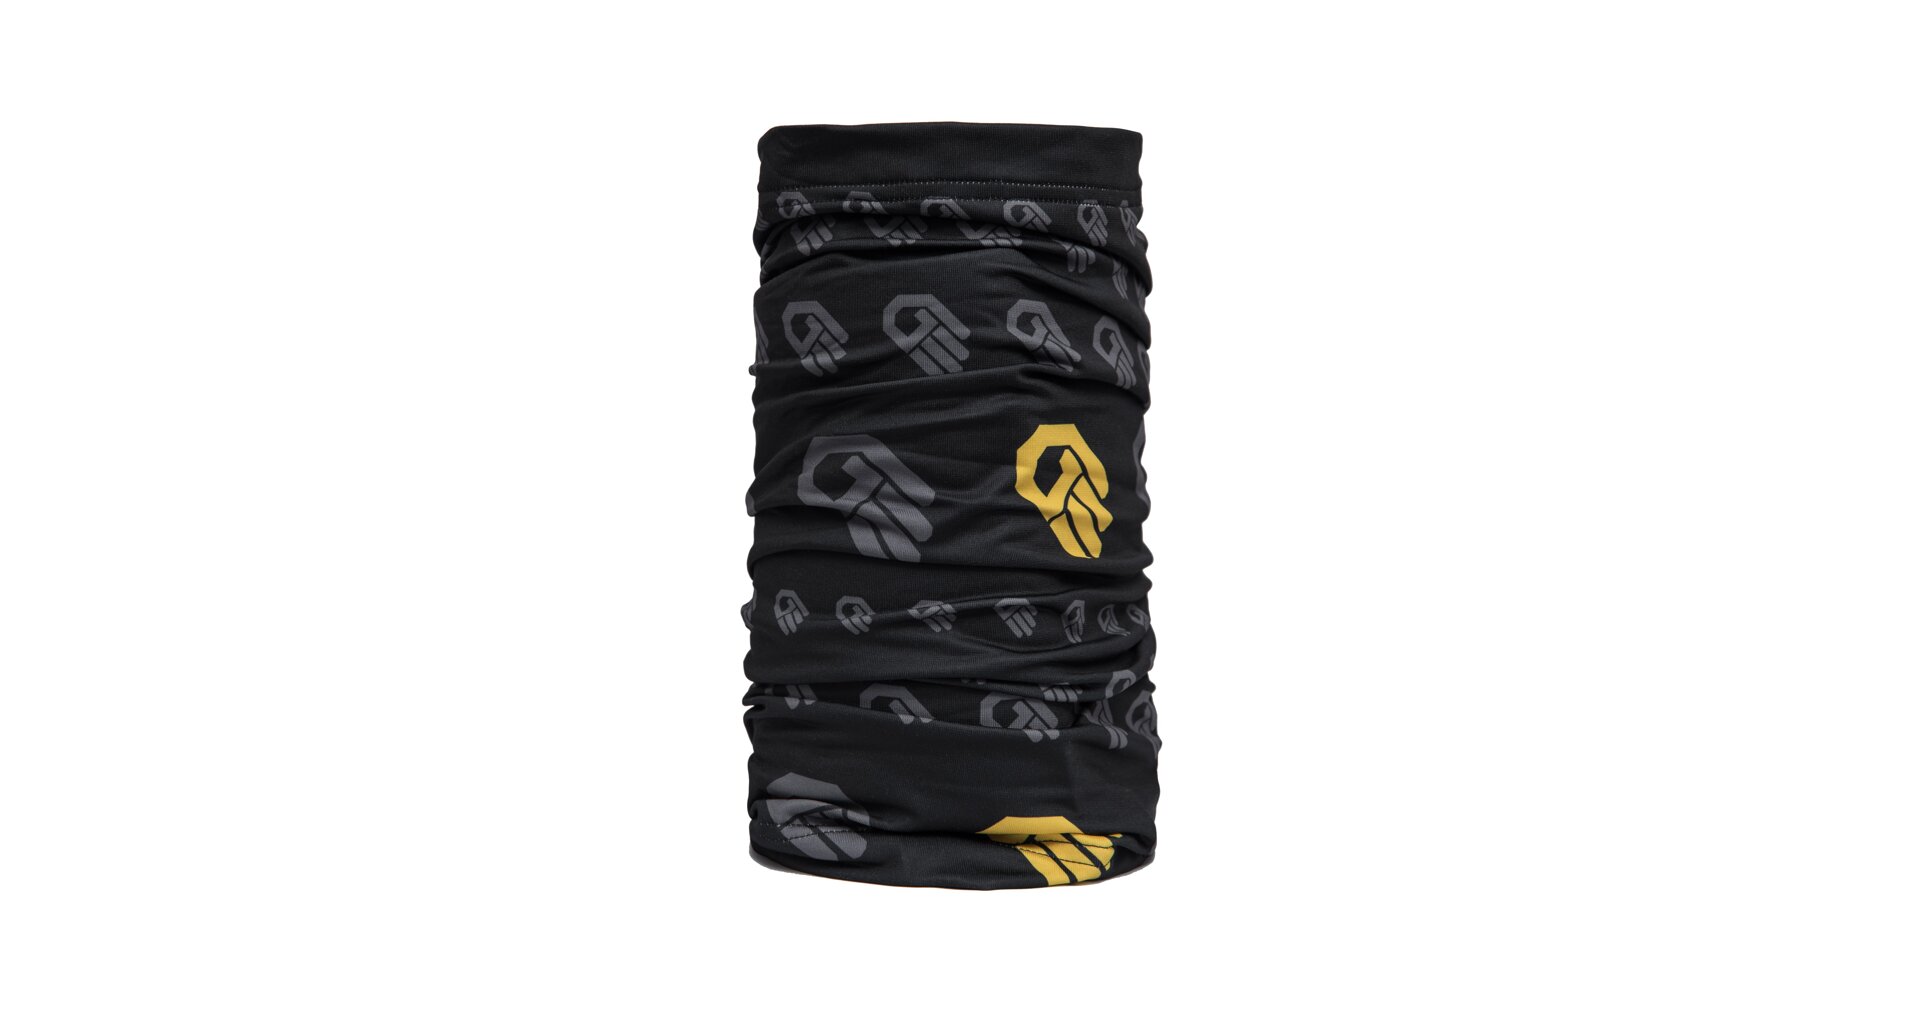 SENSOR TUBE COOLMAX THERMO HAND šátek multifunkční černá